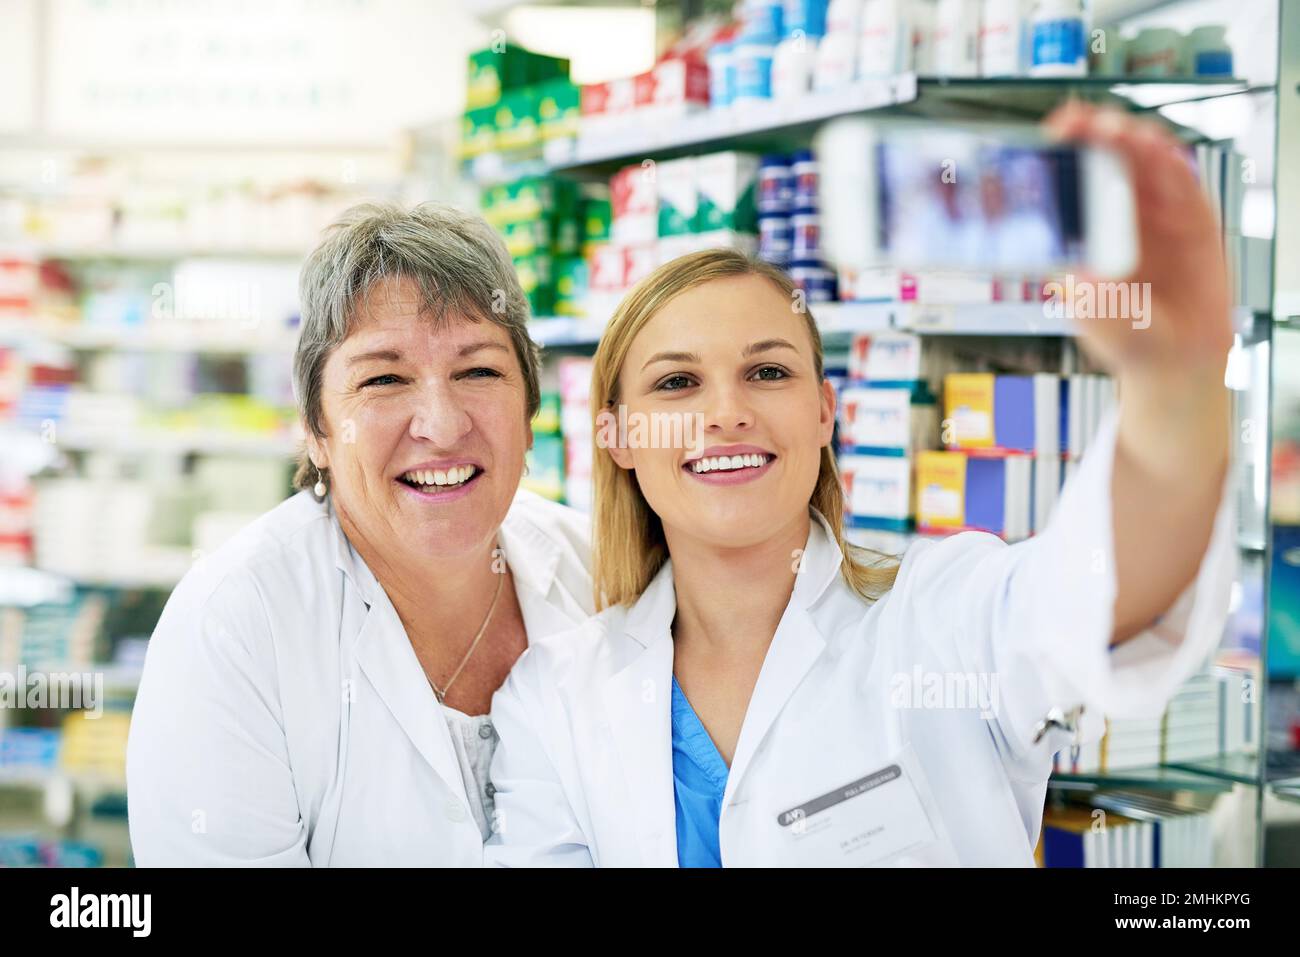 Selfies - la nouvelle façon d'auto-promotion. deux pharmaciens heureux prenant un selfie ensemble dans un chimiste. Banque D'Images